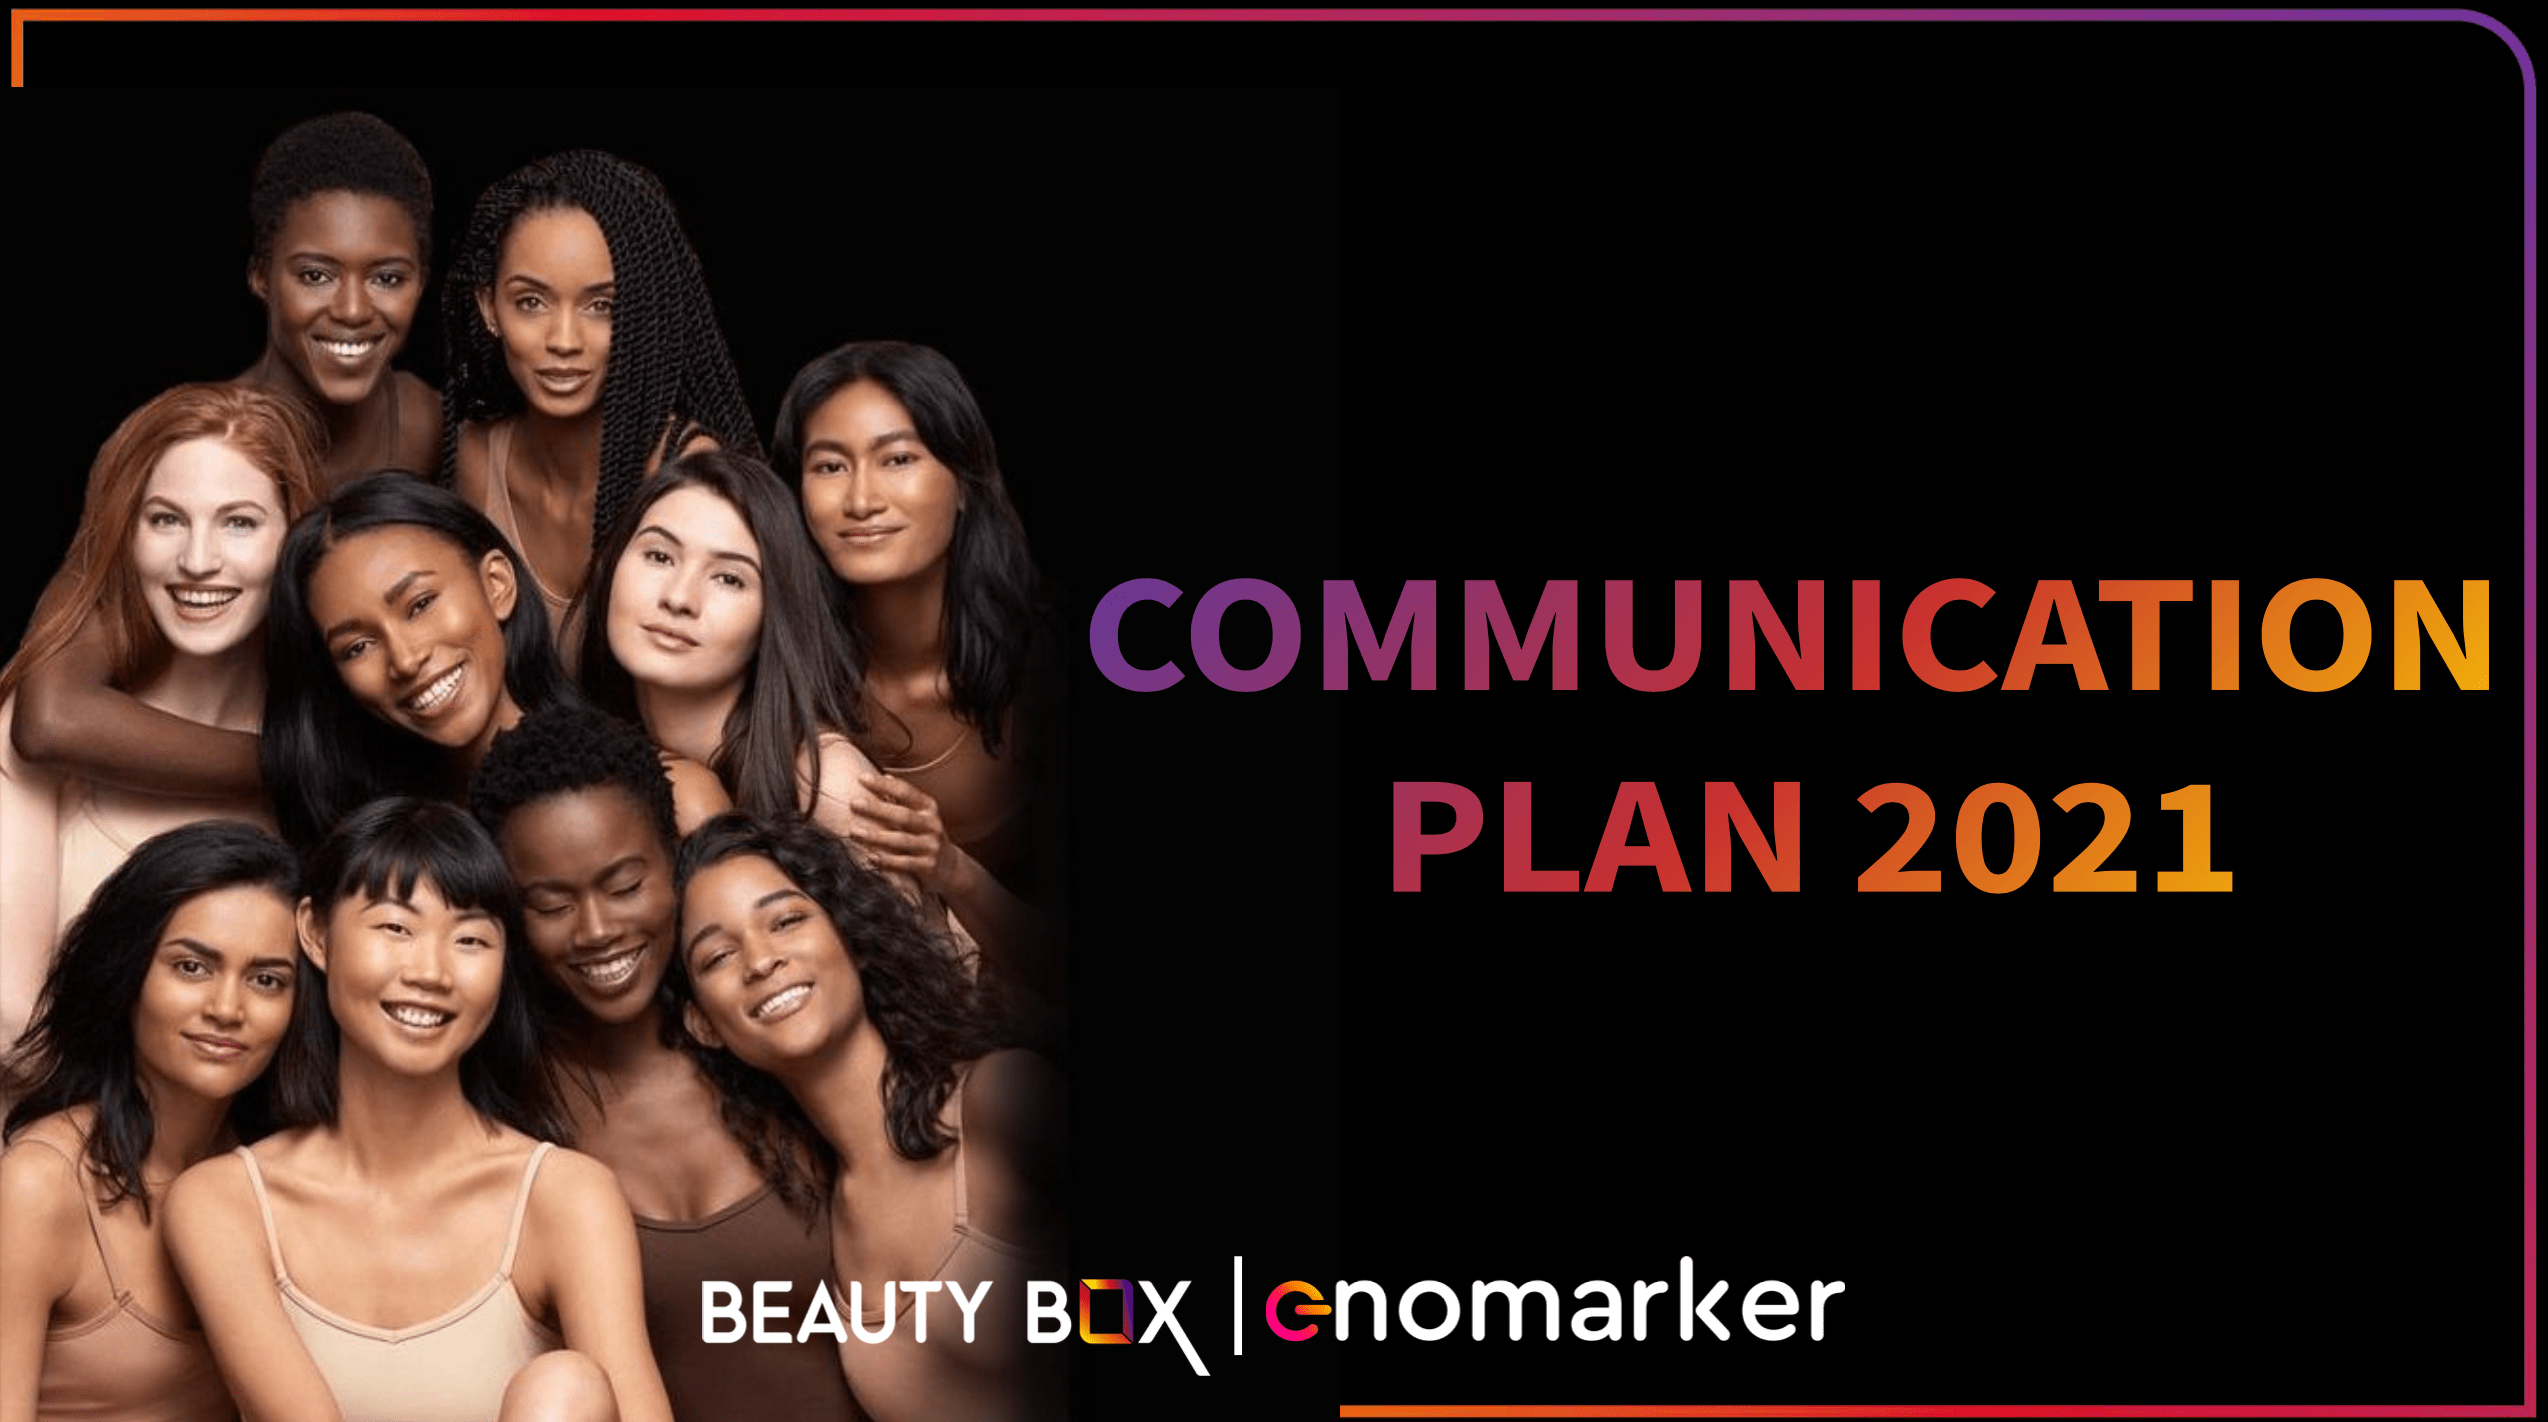 Communication Plan - Beauty Box rendition image